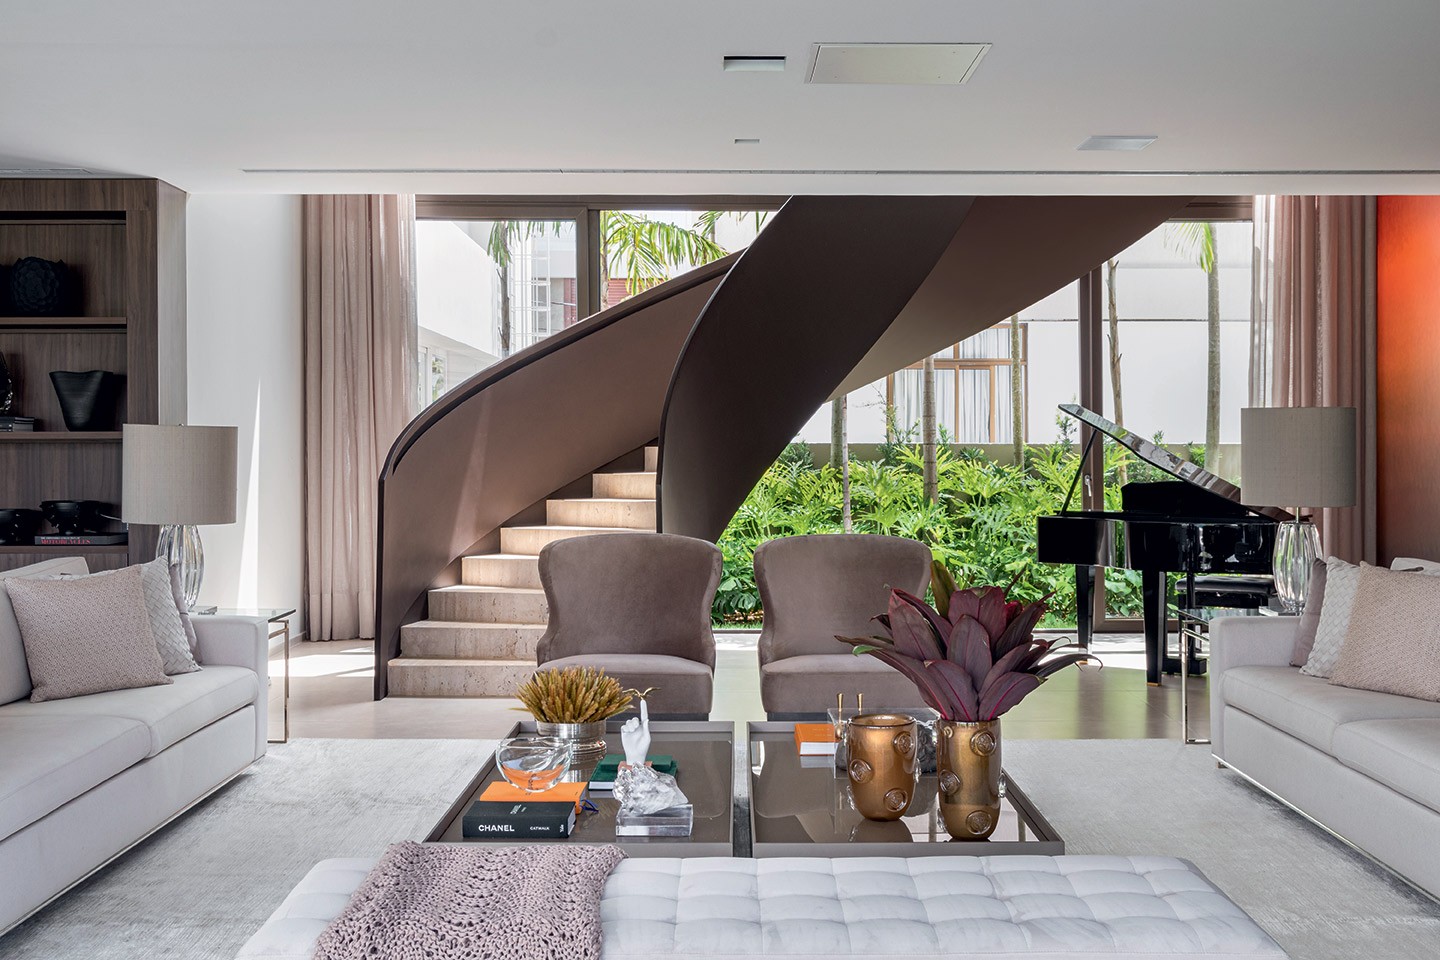 Com 807 m², casa em João Pessoa exibe cores neutras e estilo contemporâneo (Foto: Walter Dias/divulgação)